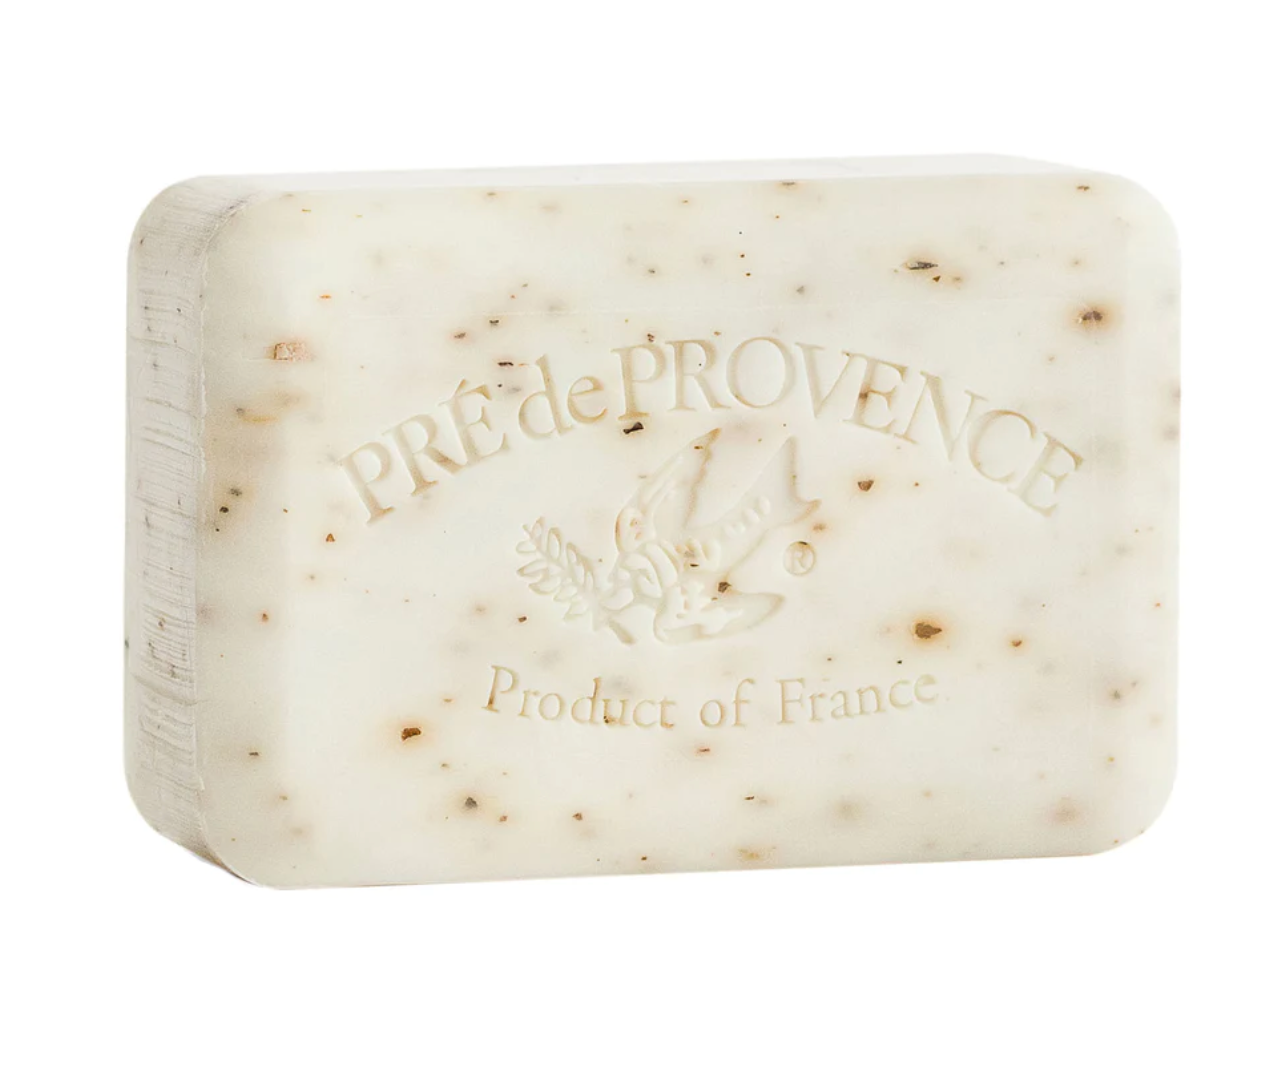 White Gardenia soap bar by Pré de Provence